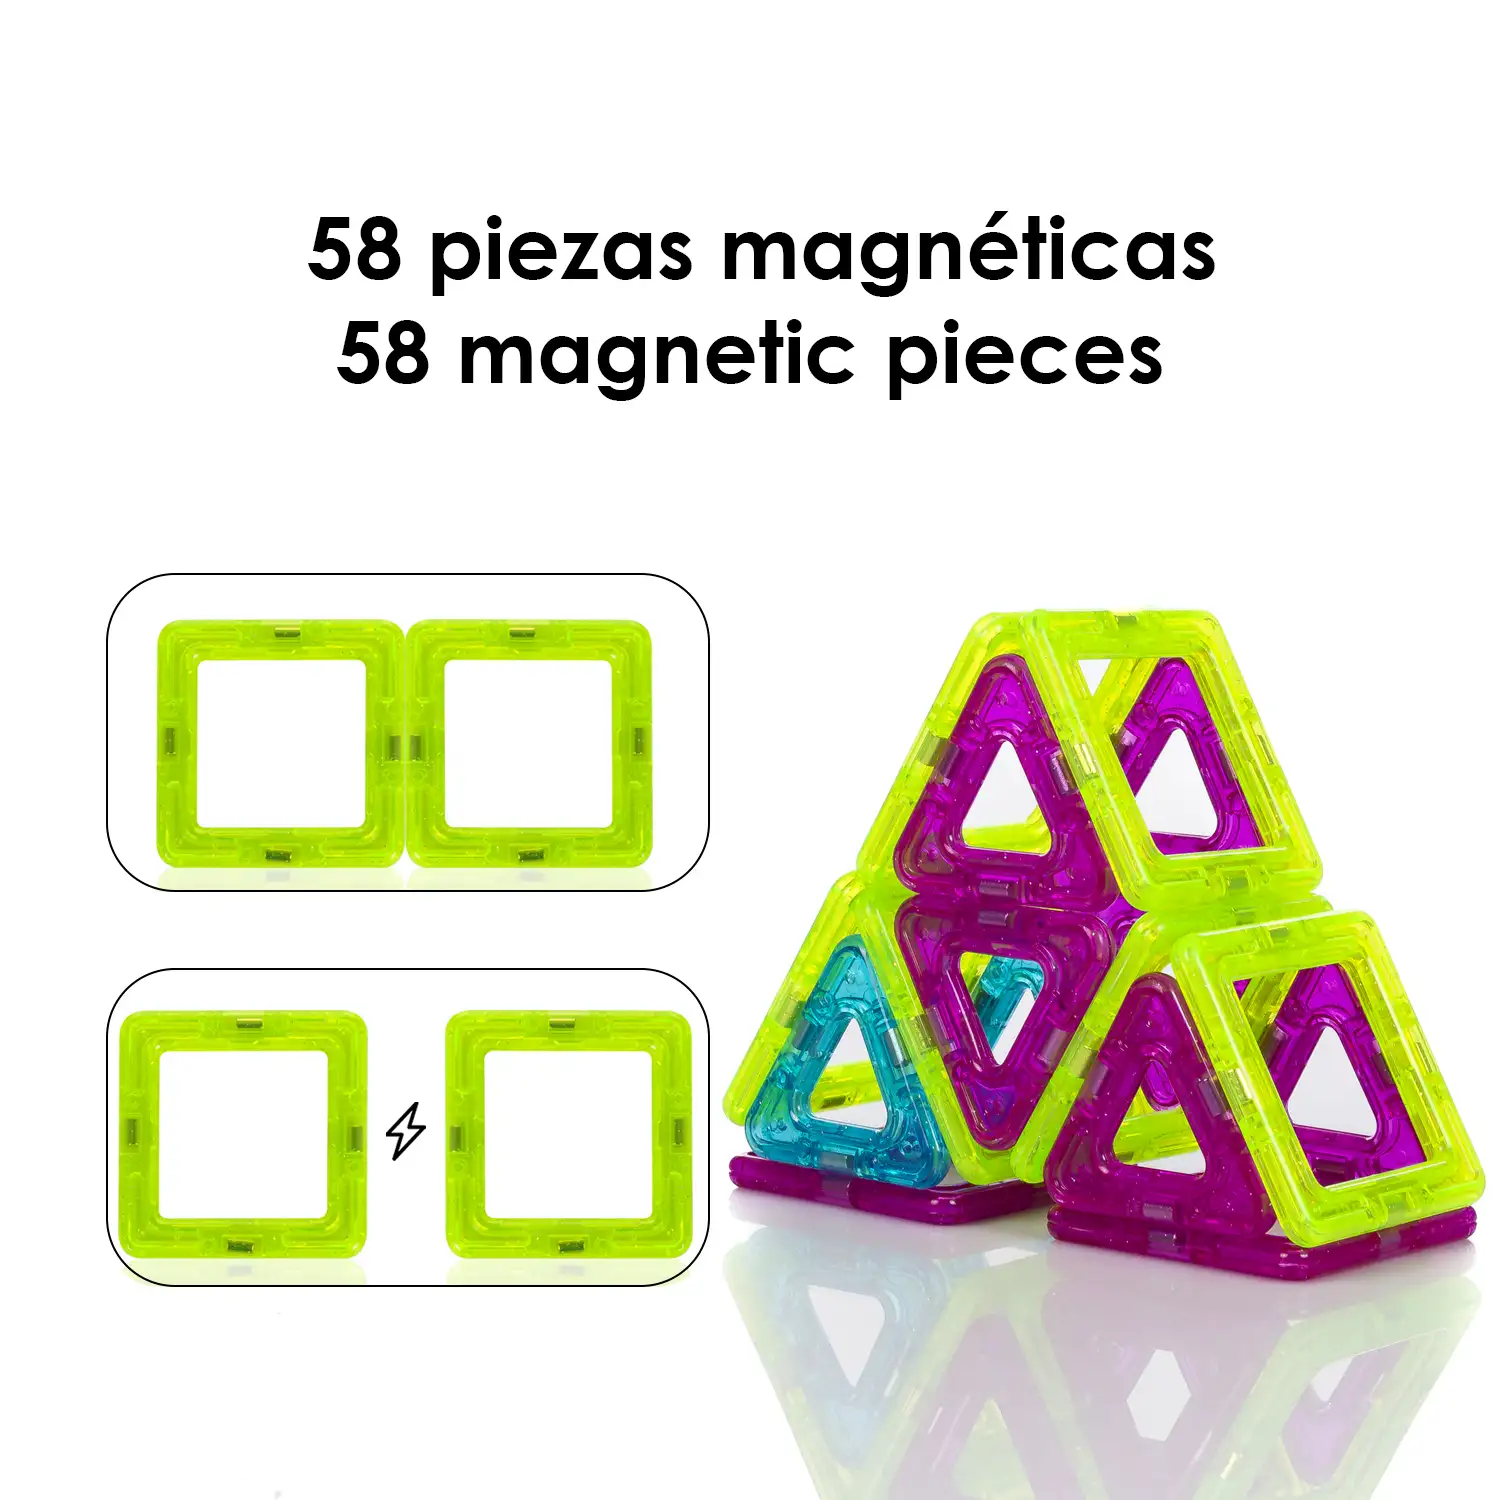 Piezas magnéticas de construcción para niños, con piezas móviles para crear figuras giratorias. 58 piezas.